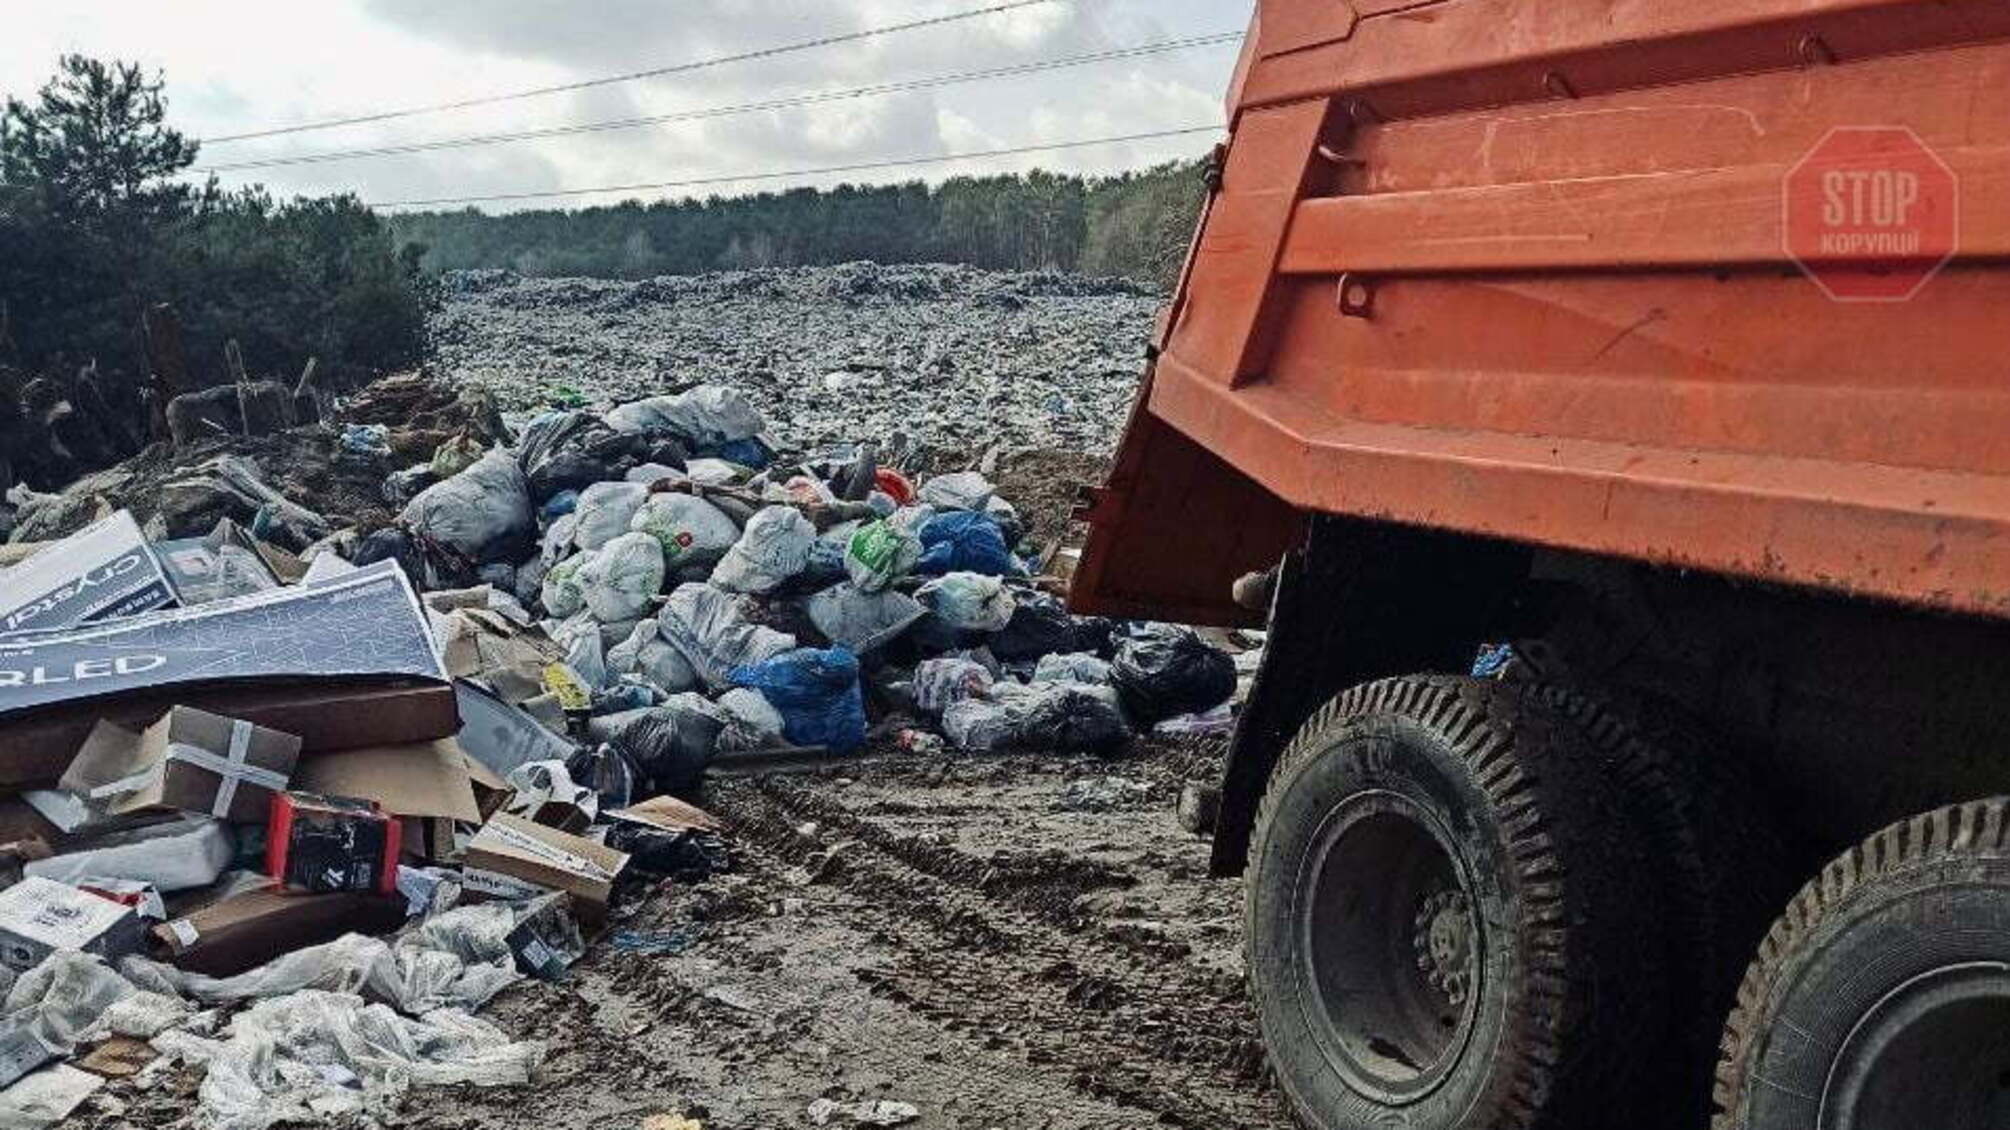 Нова влада – старі схеми: на сміттєвому полігоні у Старих Петрівцях виявлено чергові порушення (фото)